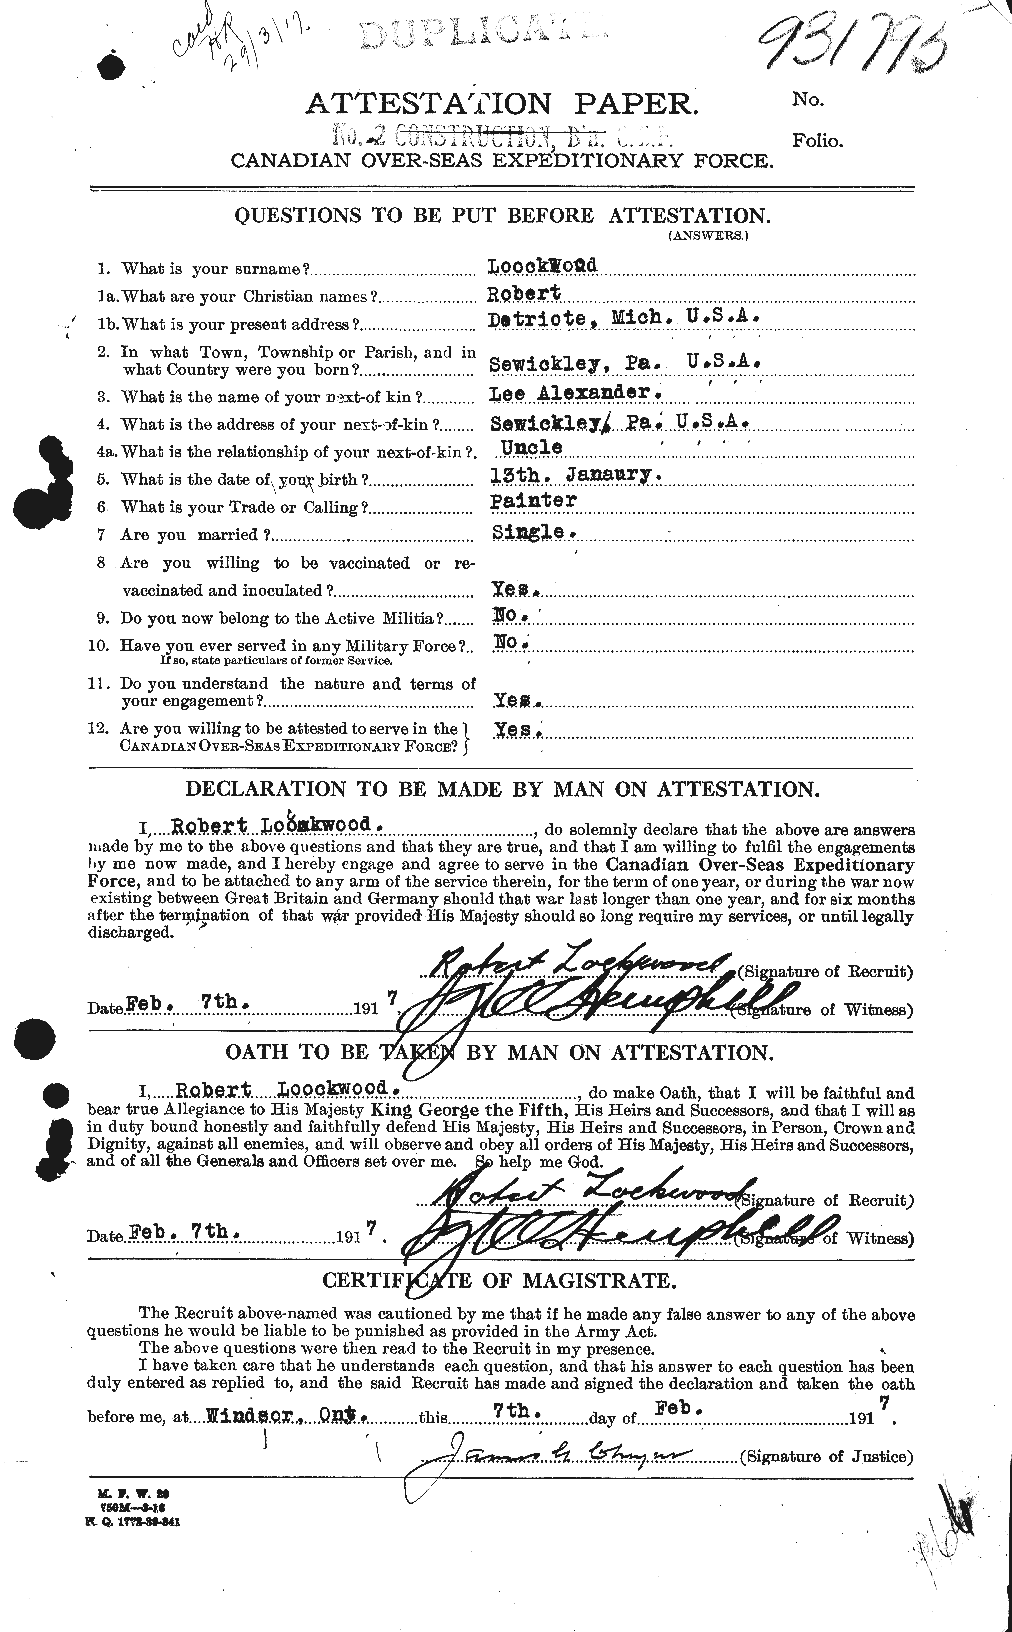 Dossiers du Personnel de la Première Guerre mondiale - CEC 464736a